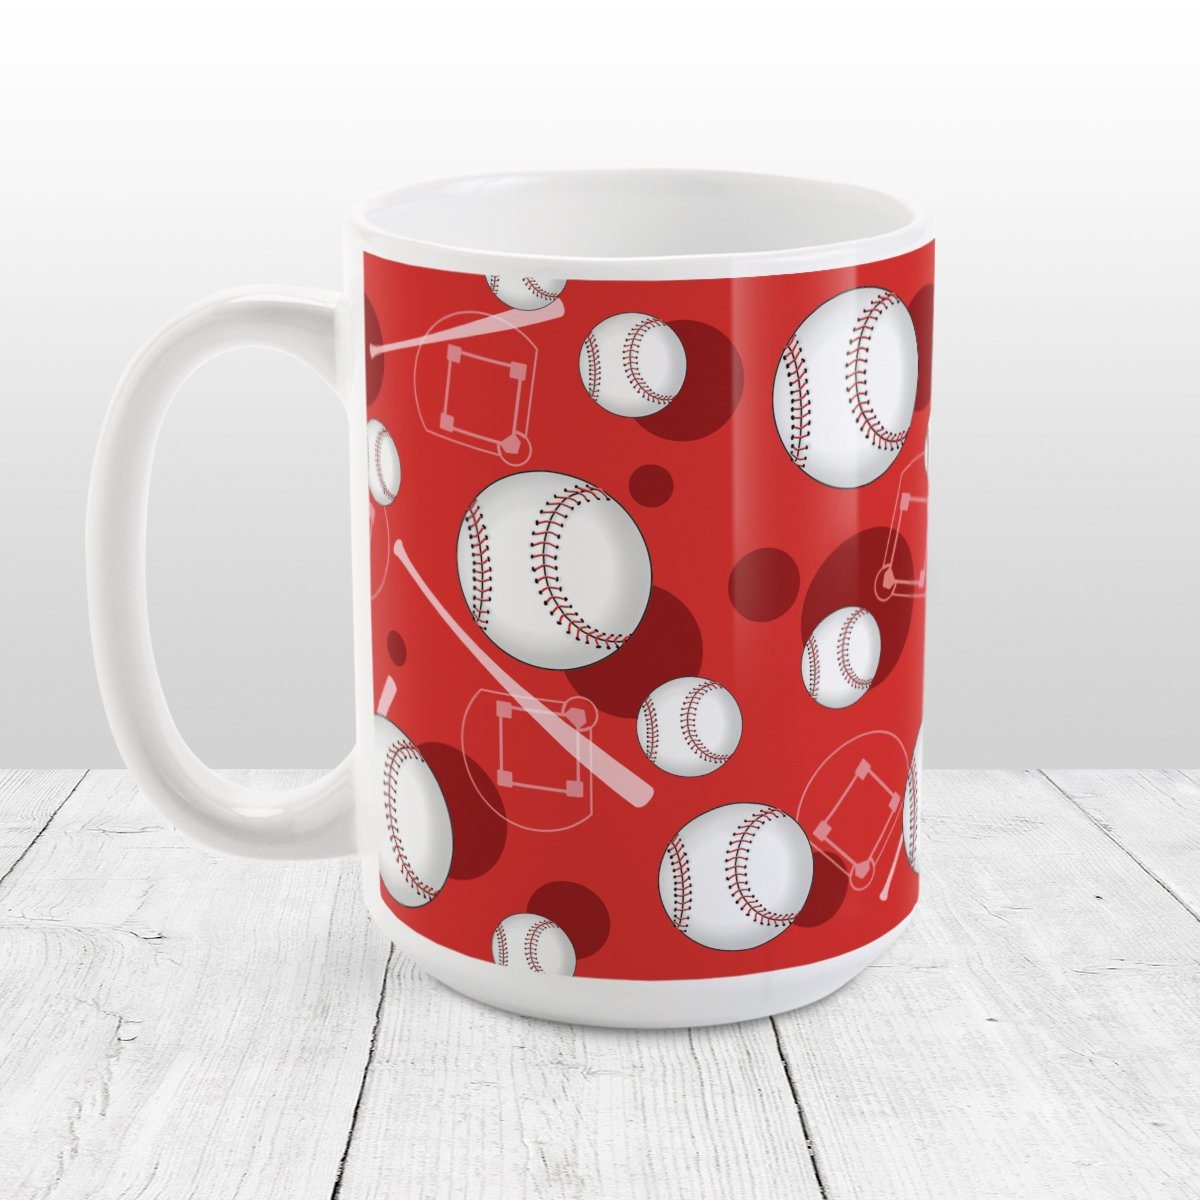 Baseball Themed Pattern Red Mug at Amy's Coffee Mugs